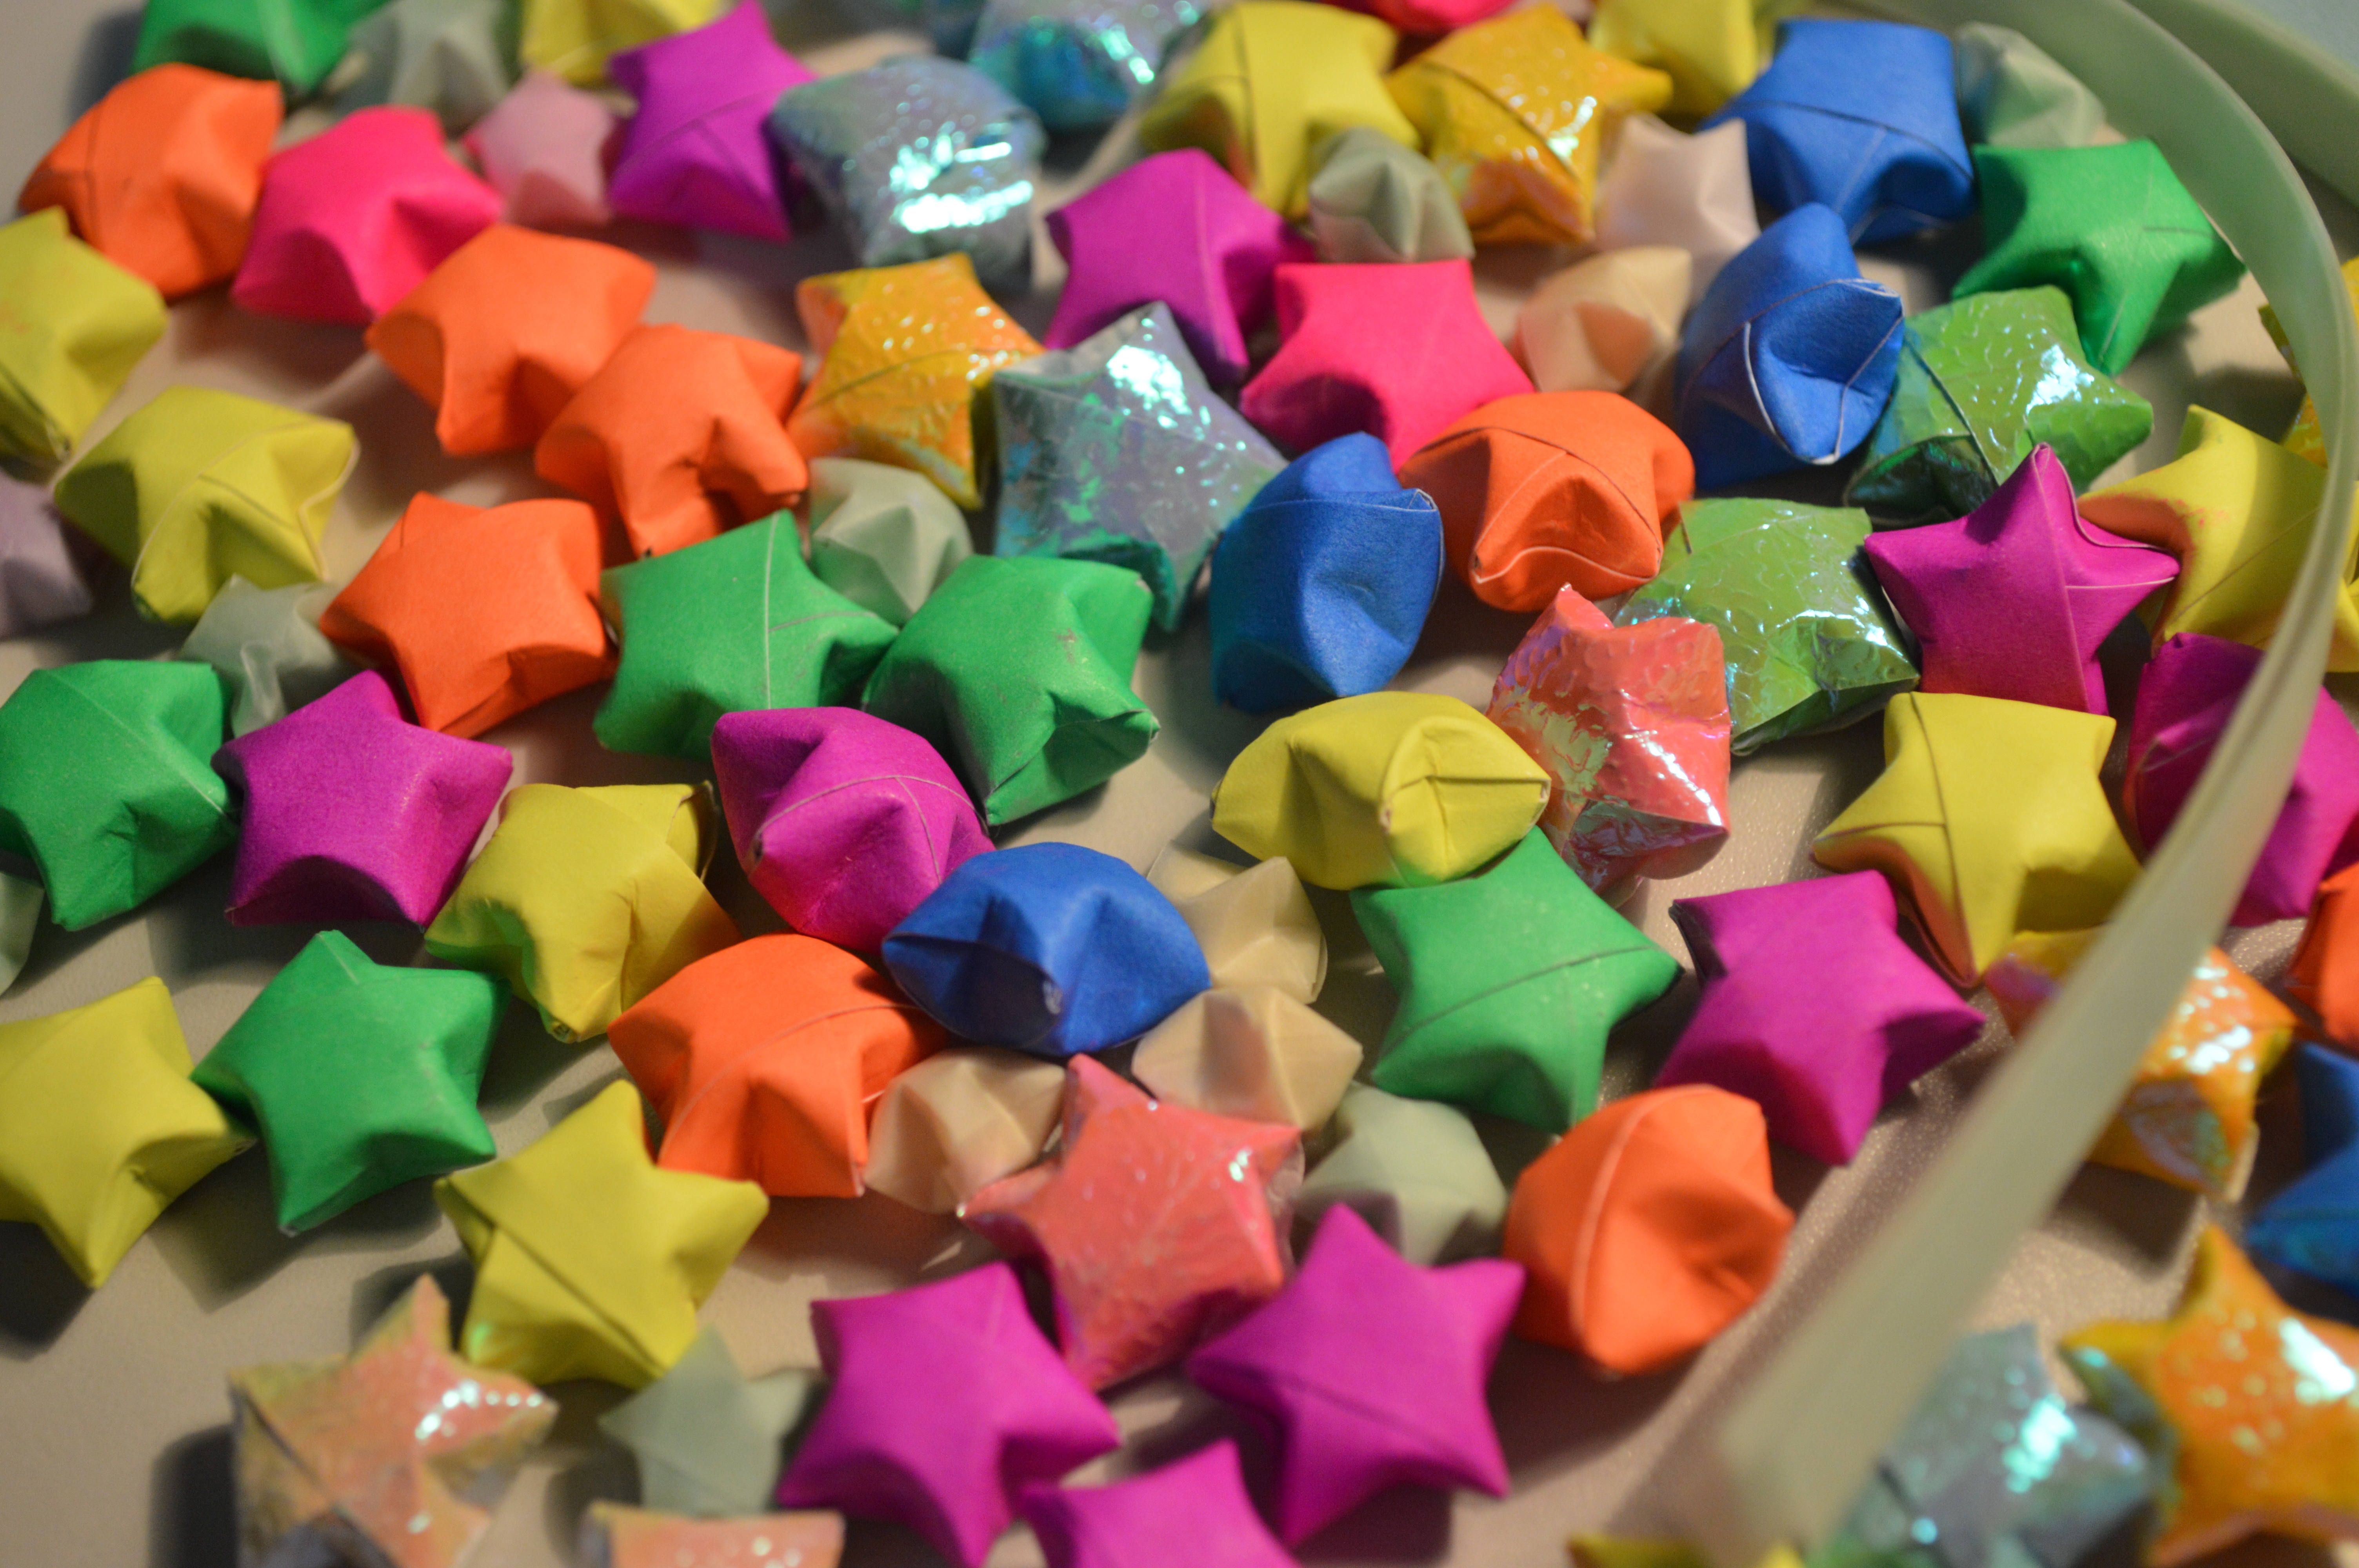 Скачать обои бесплатно Оригами, Цветная Бумага, Звезды, Разное картинка на рабочий стол ПК